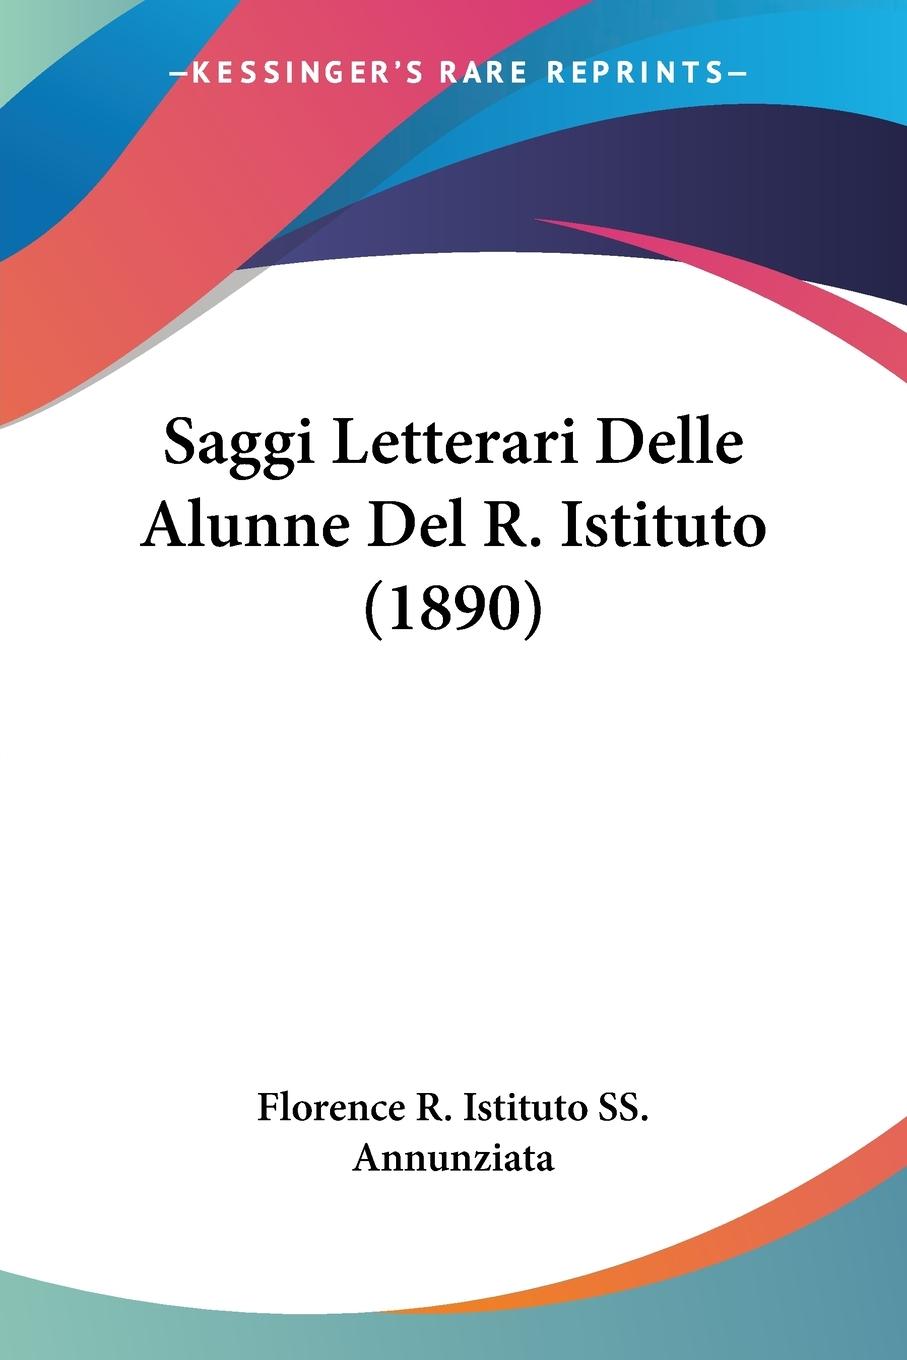 Saggi Letterari Delle Alunne Del R. Istituto (1890) - Florence R. Istituto SS. Annunziata